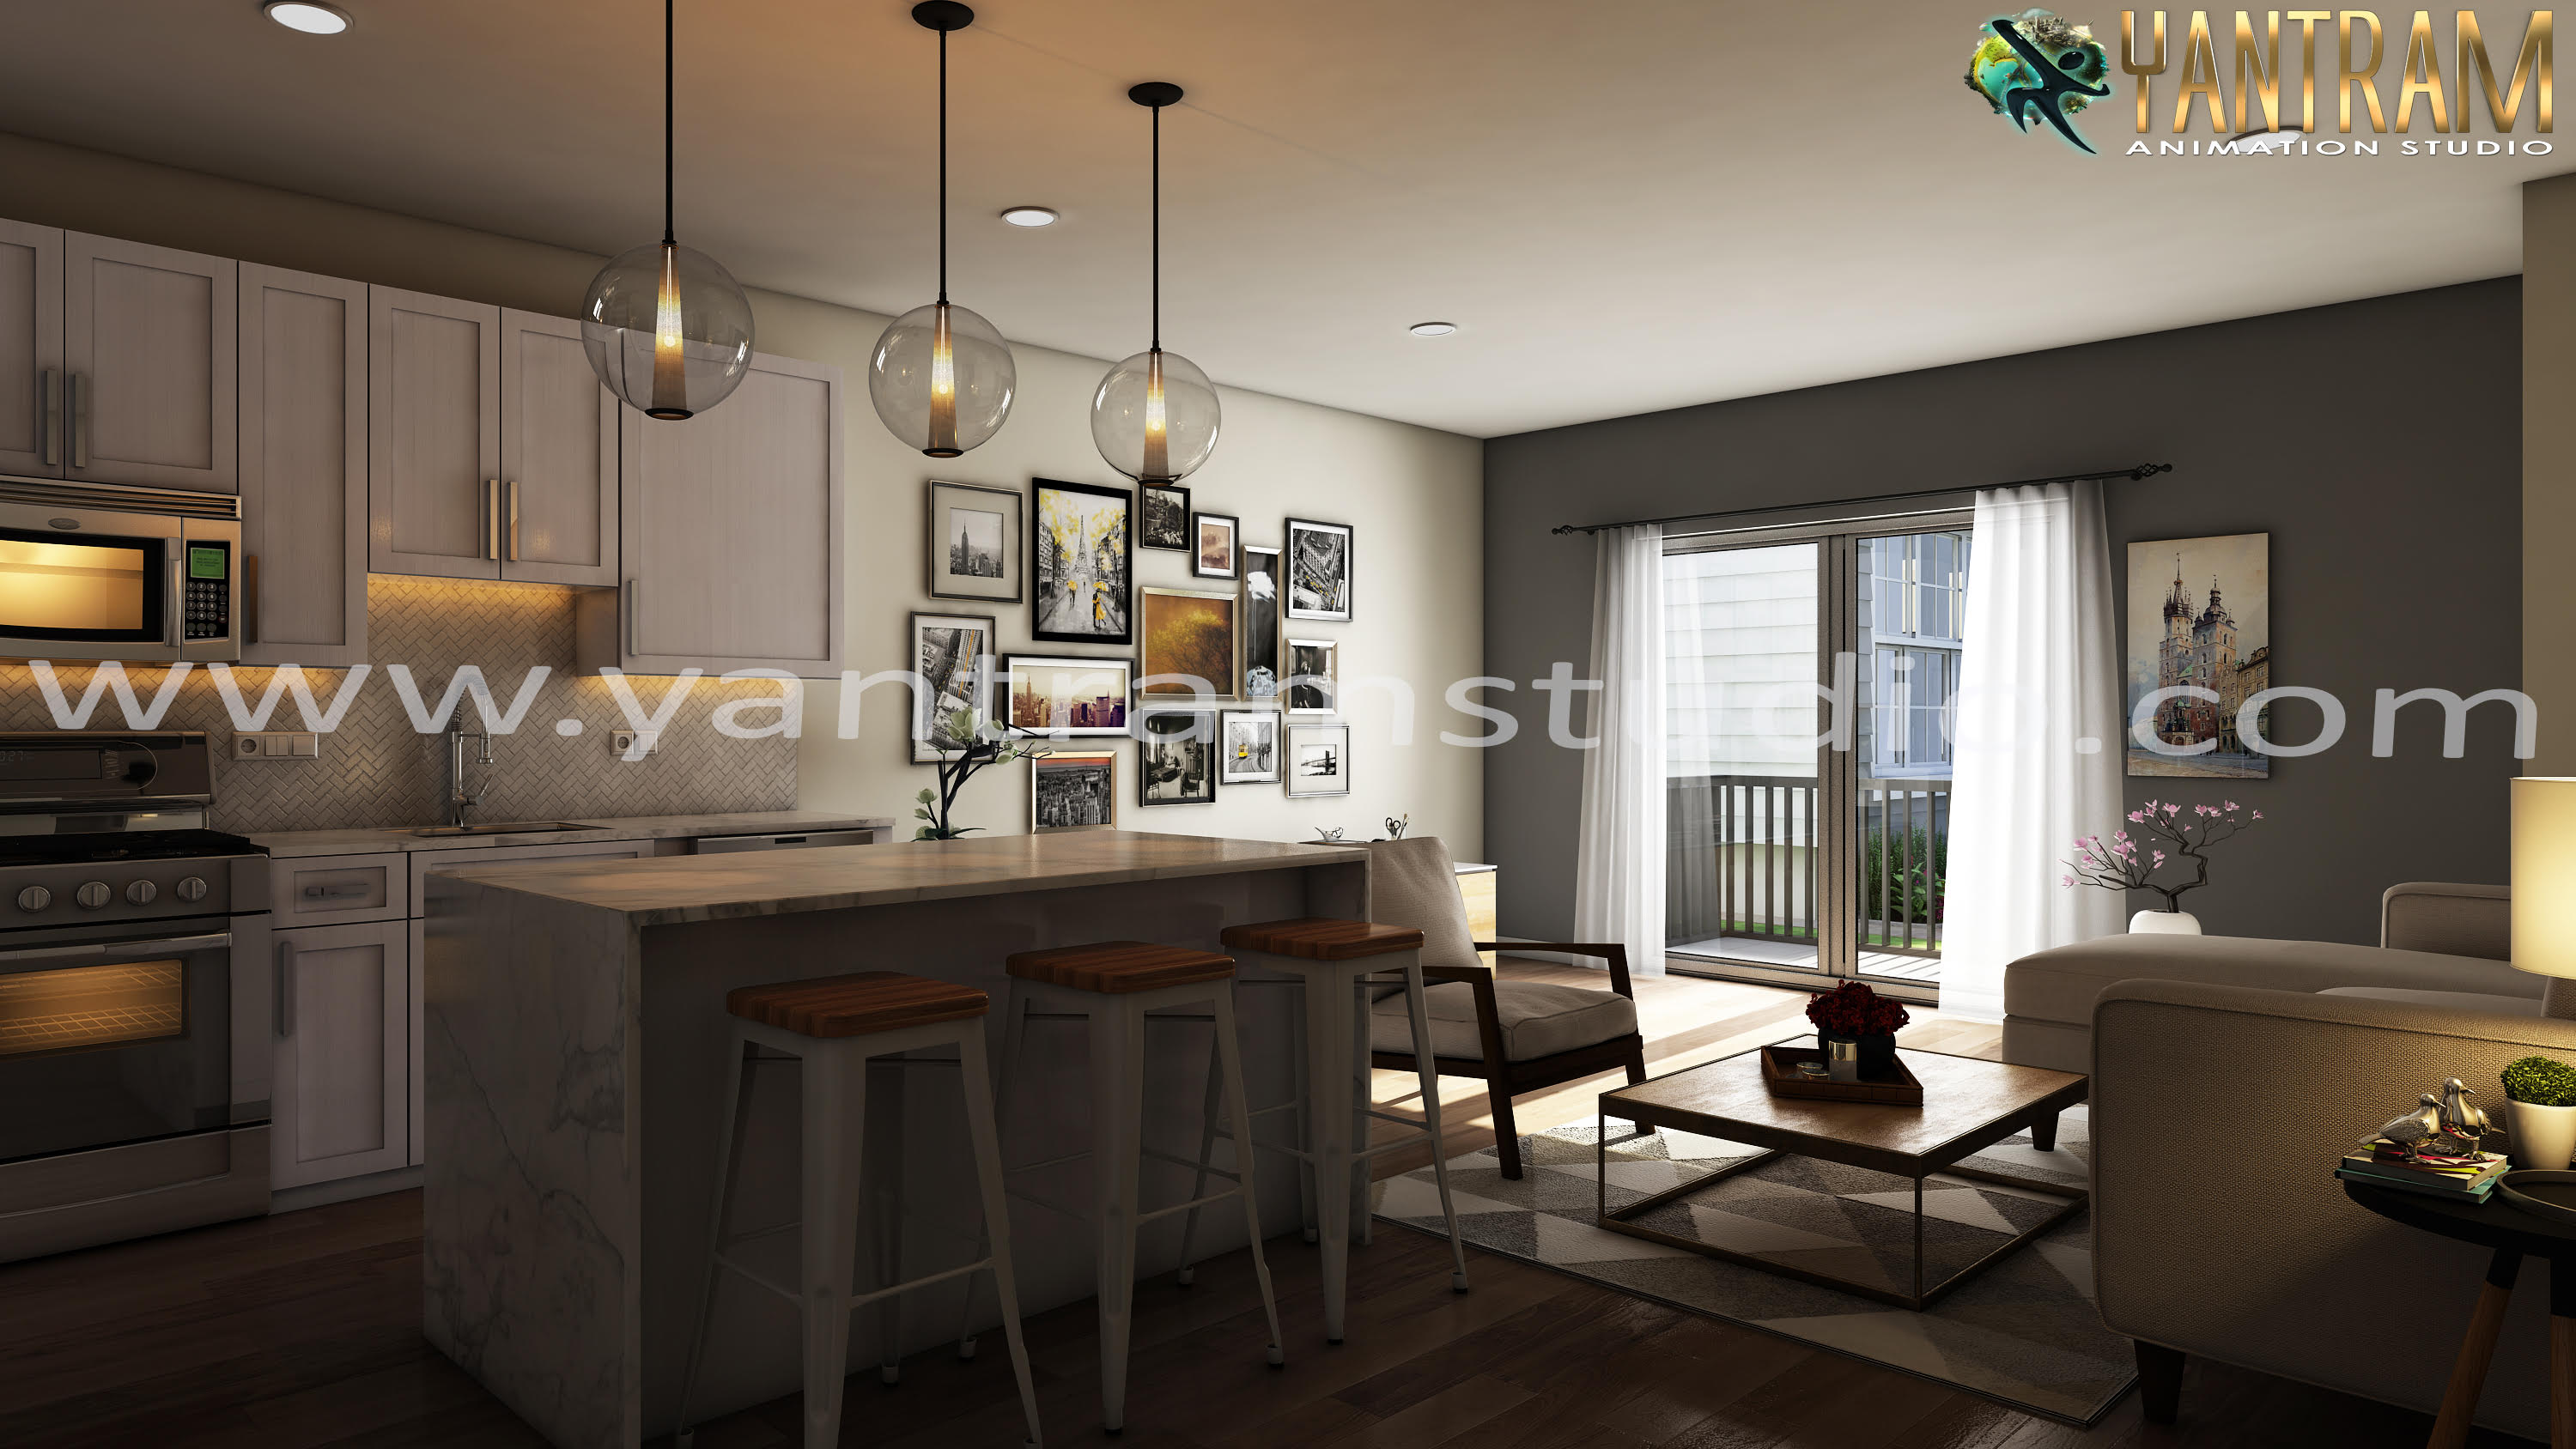 Living room -Kitchen idea of  Interior Design Firms by architectural design studio.jpg -  by Yantramarchitecturaldesignstudio